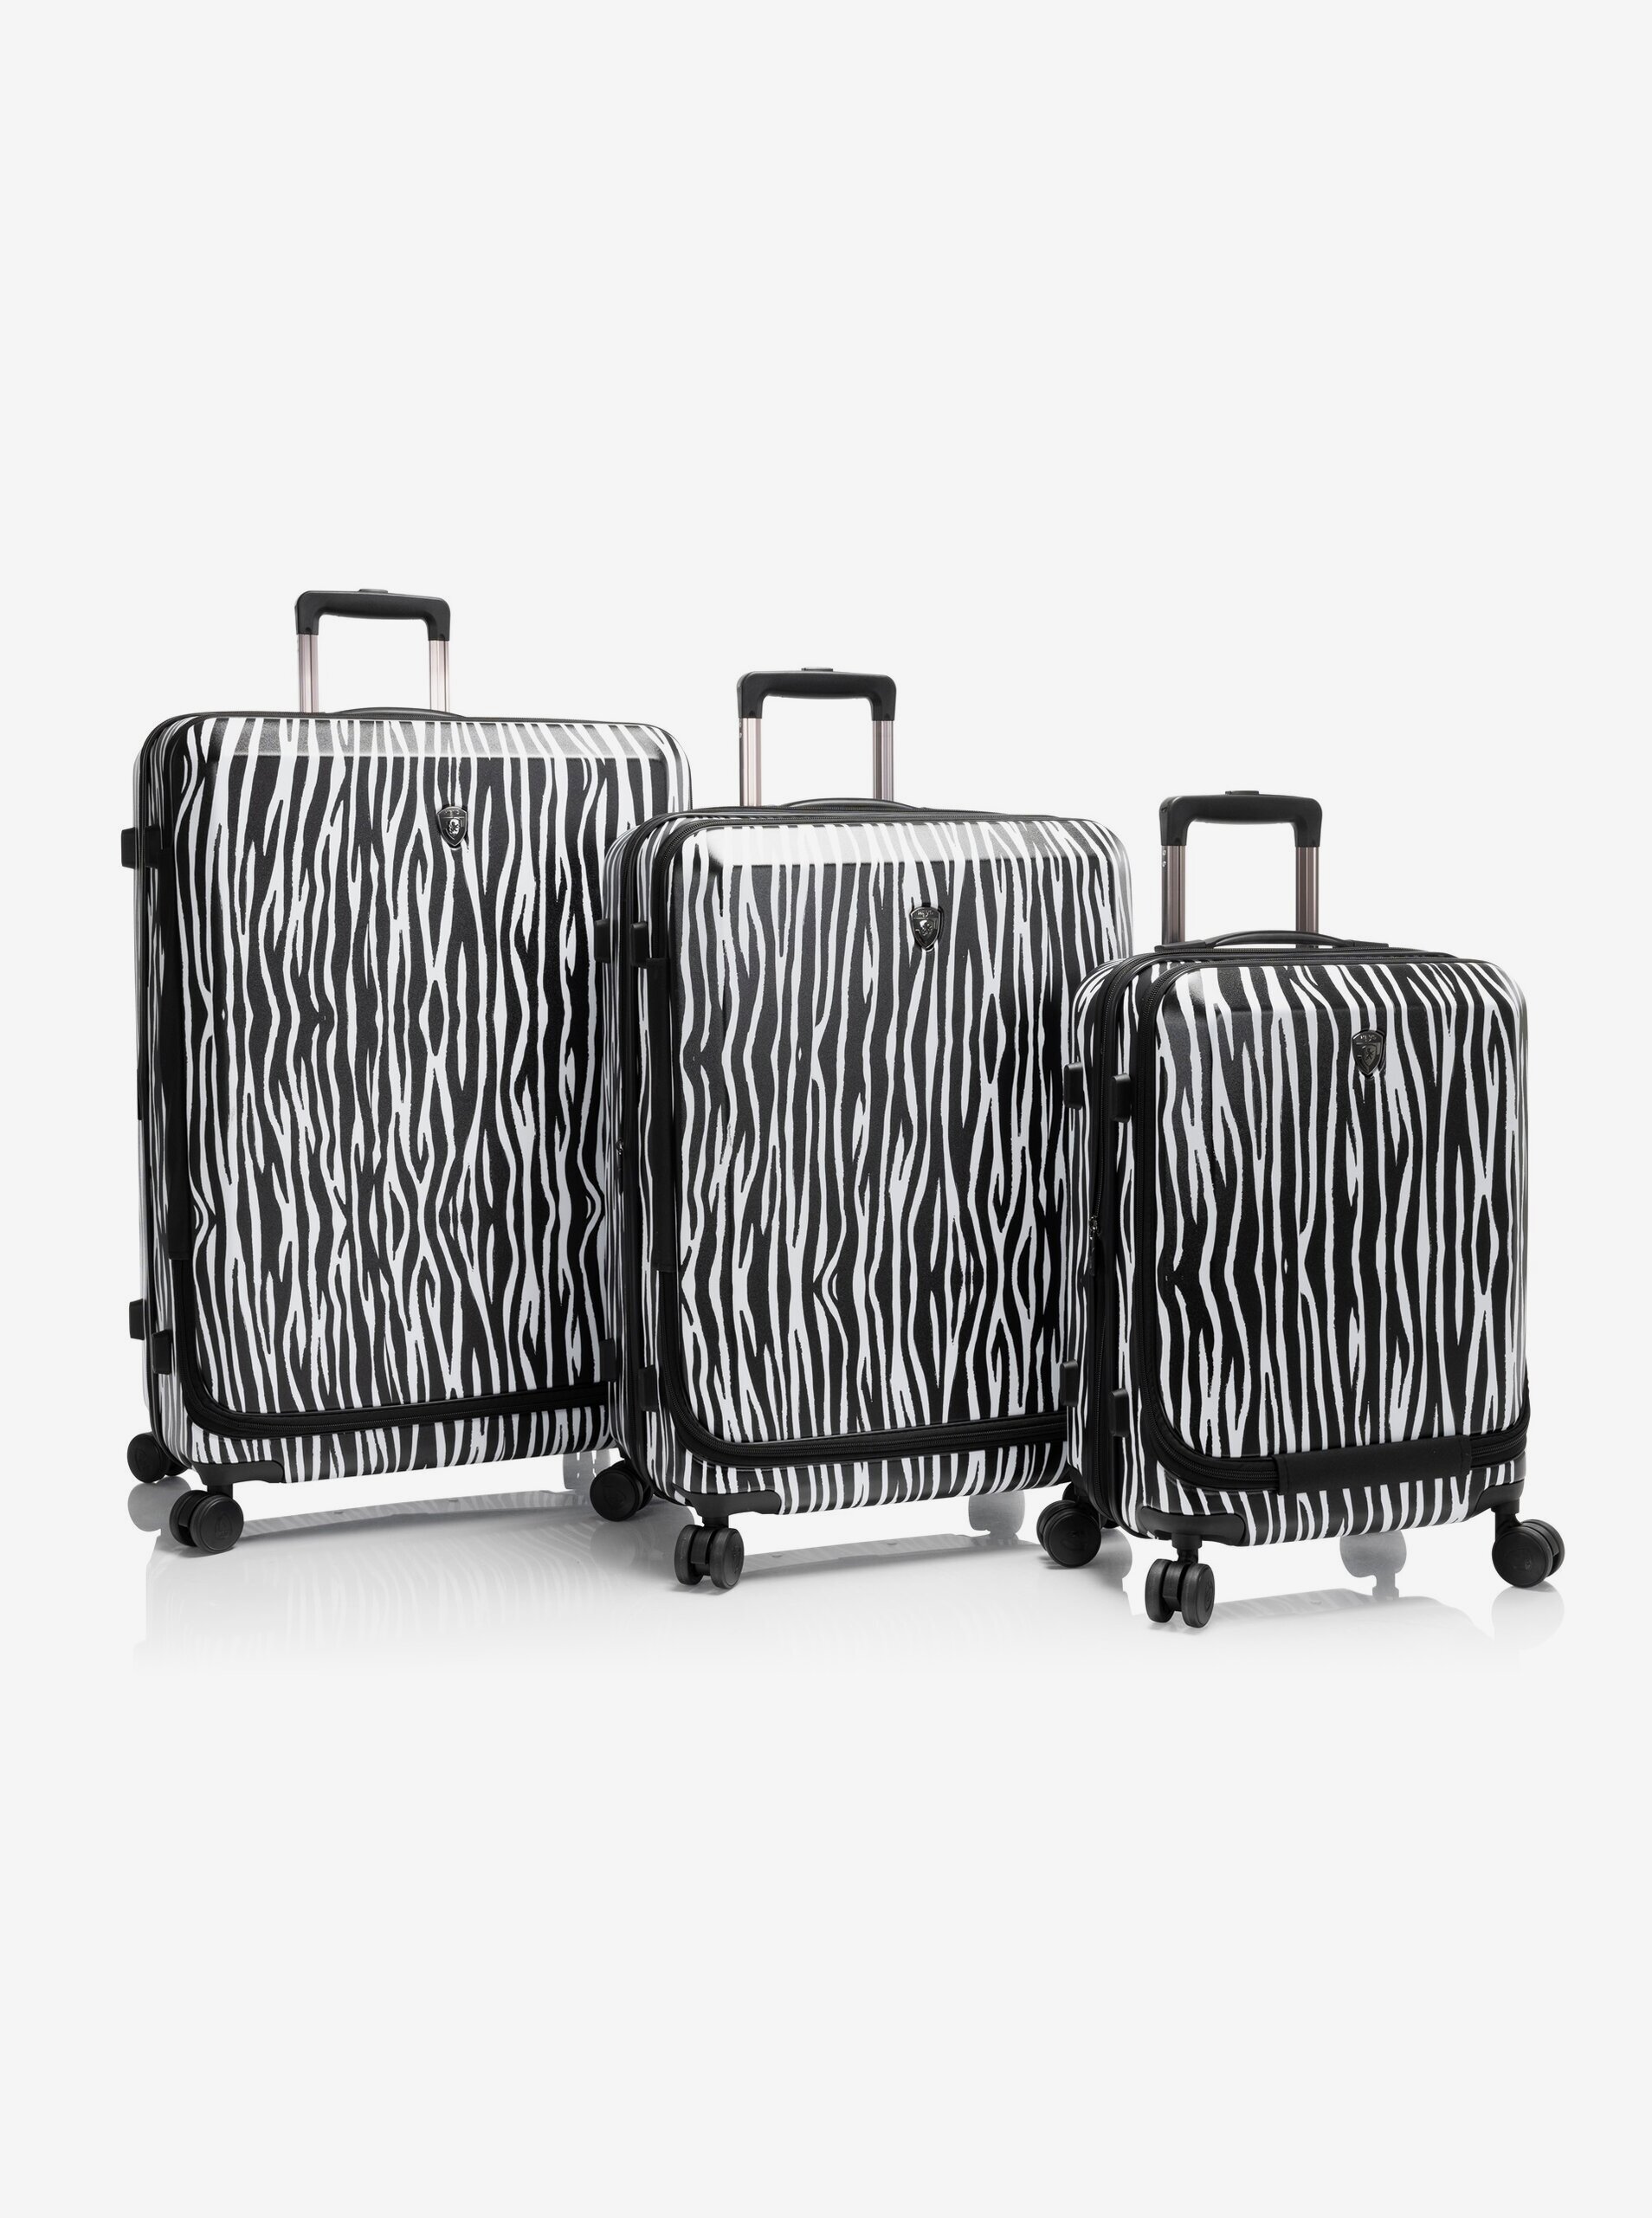 Lacno Súprava troch cestovných kufrov Heys EZ Fashion S,M,L Zebra